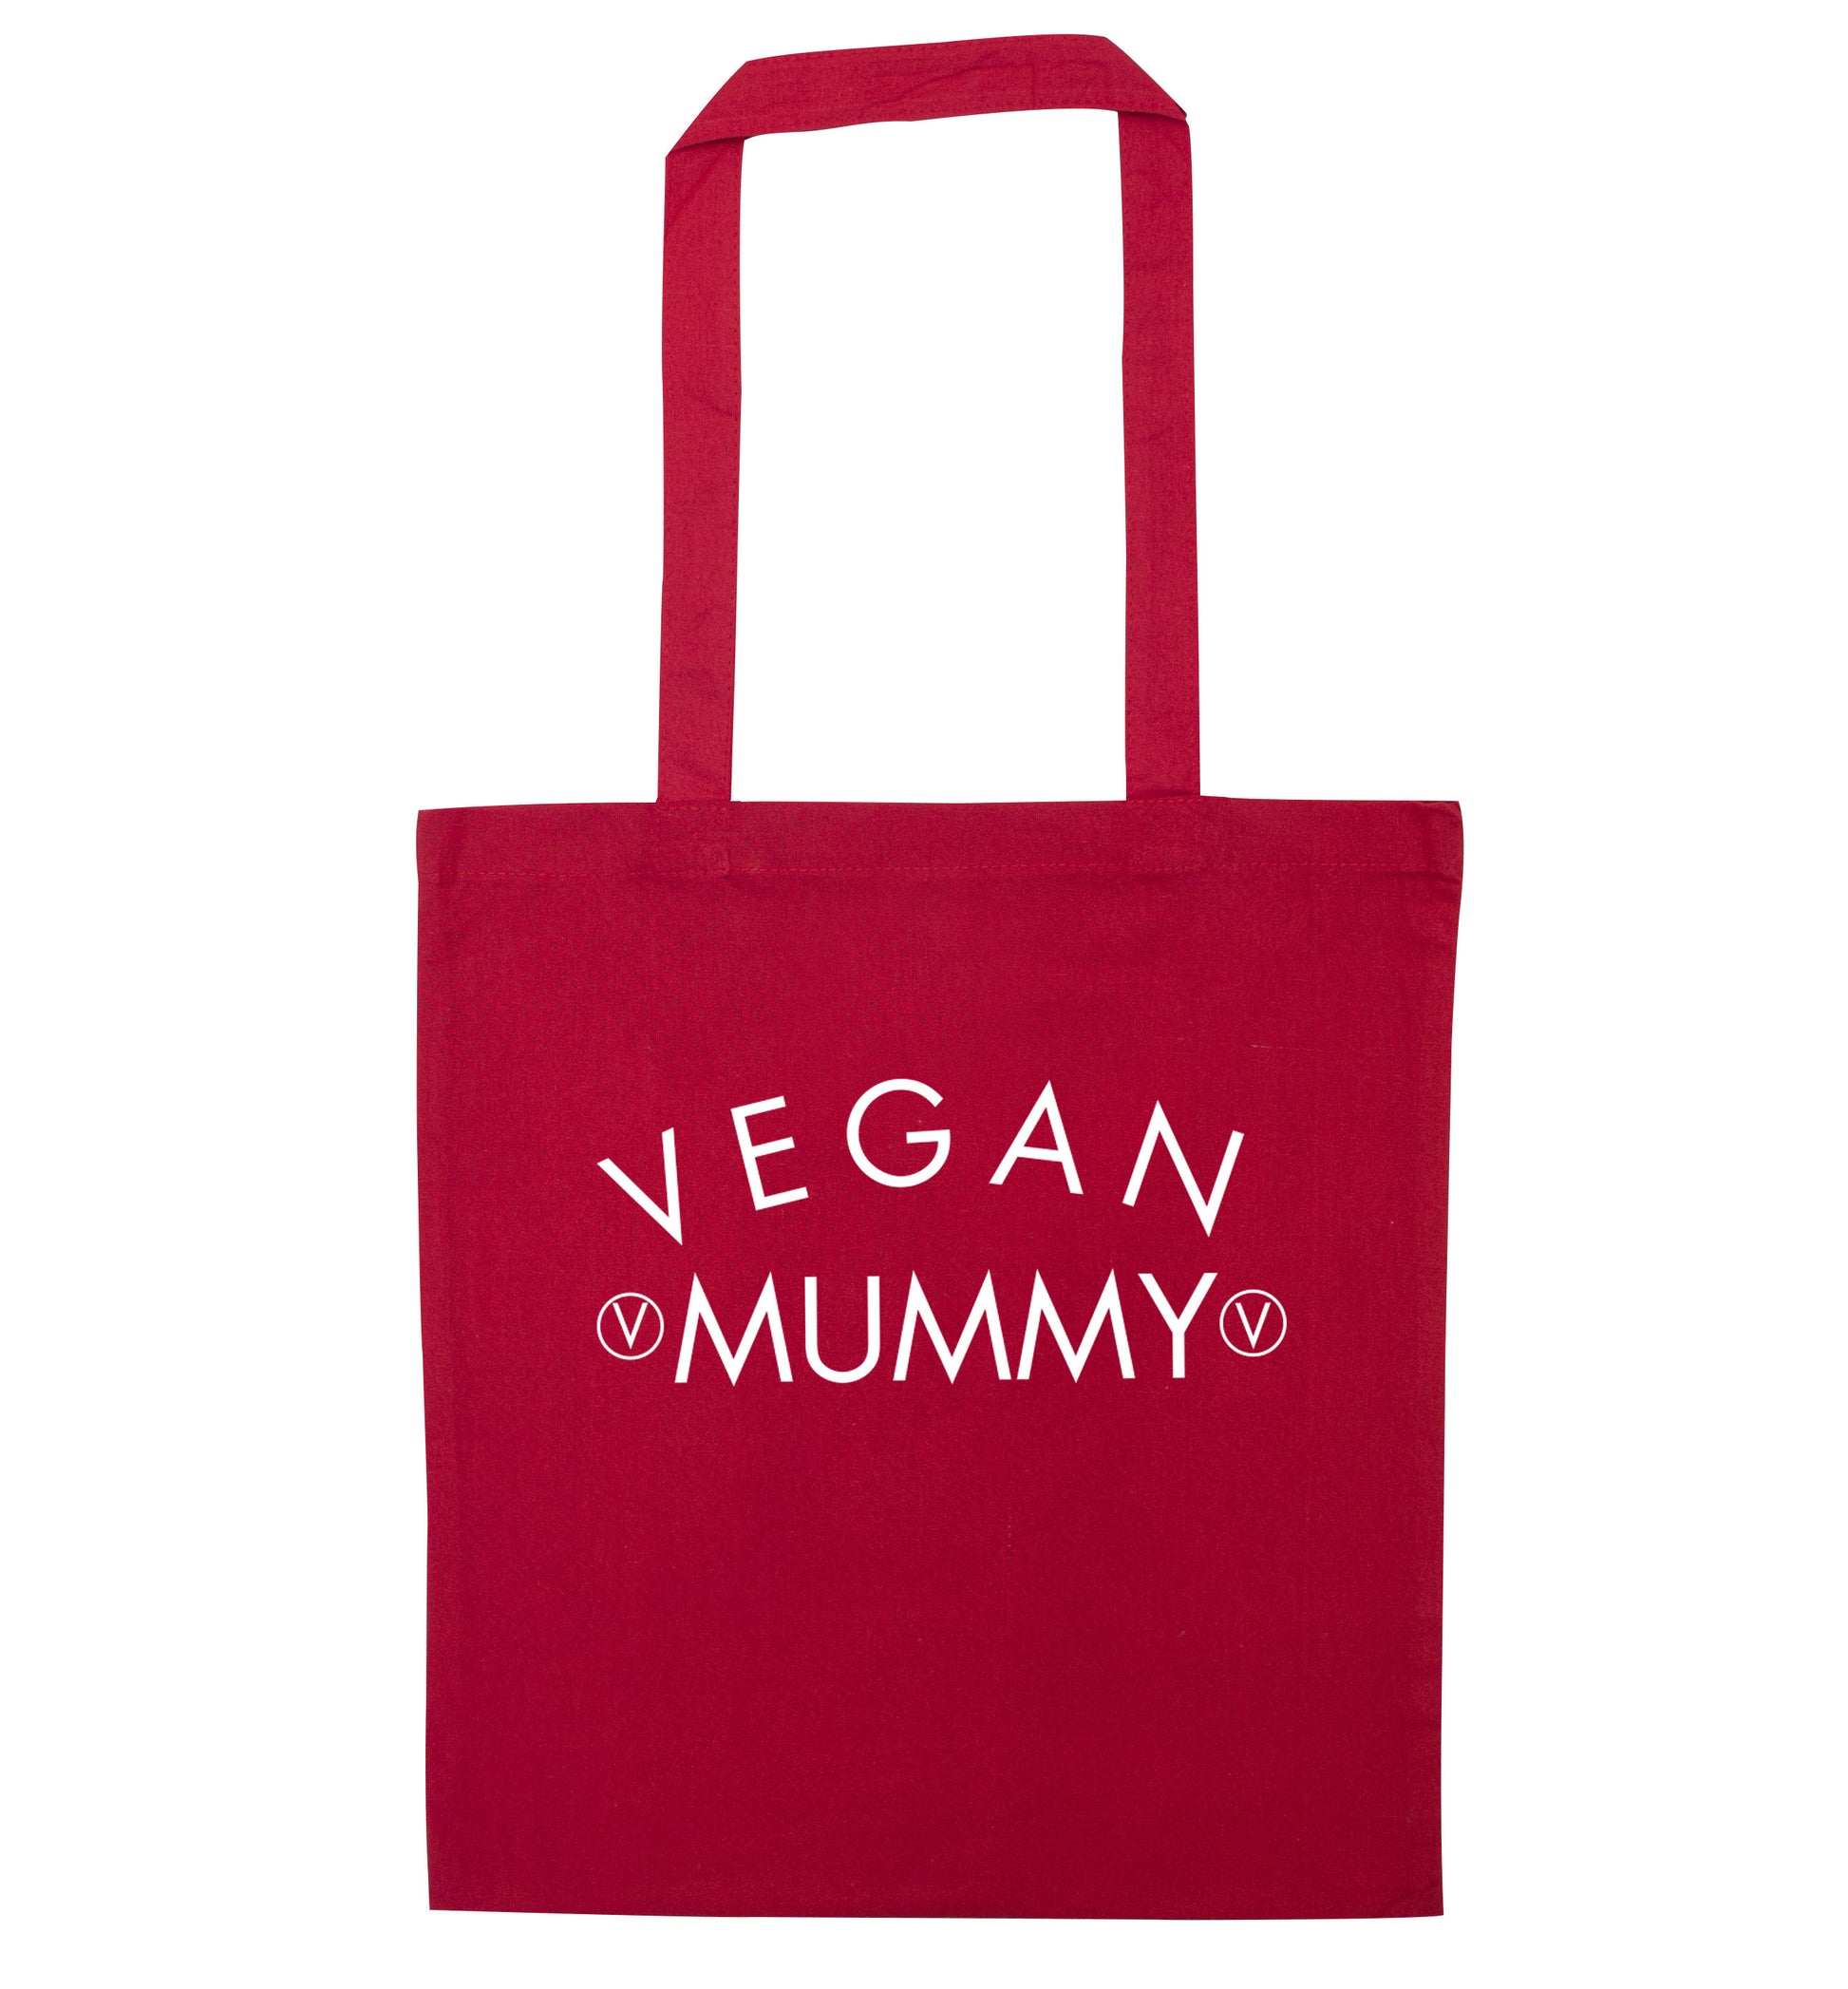 Vegan mummy red tote bag